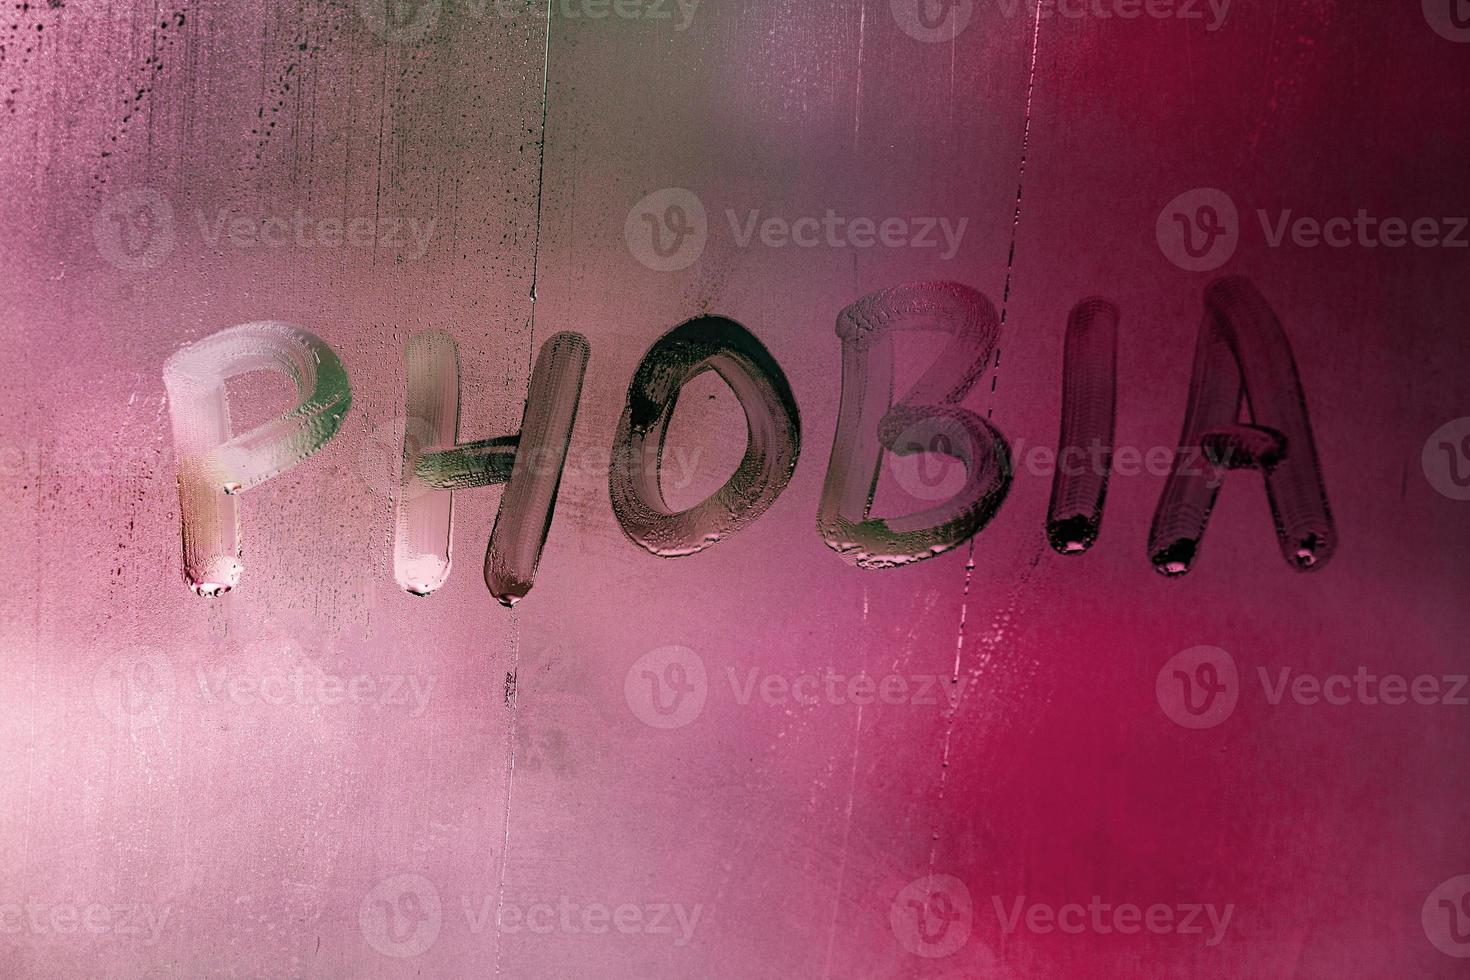 de ord fobi handskriven på våt dimmig fönster glas yta med röd bakgrund ljus foto